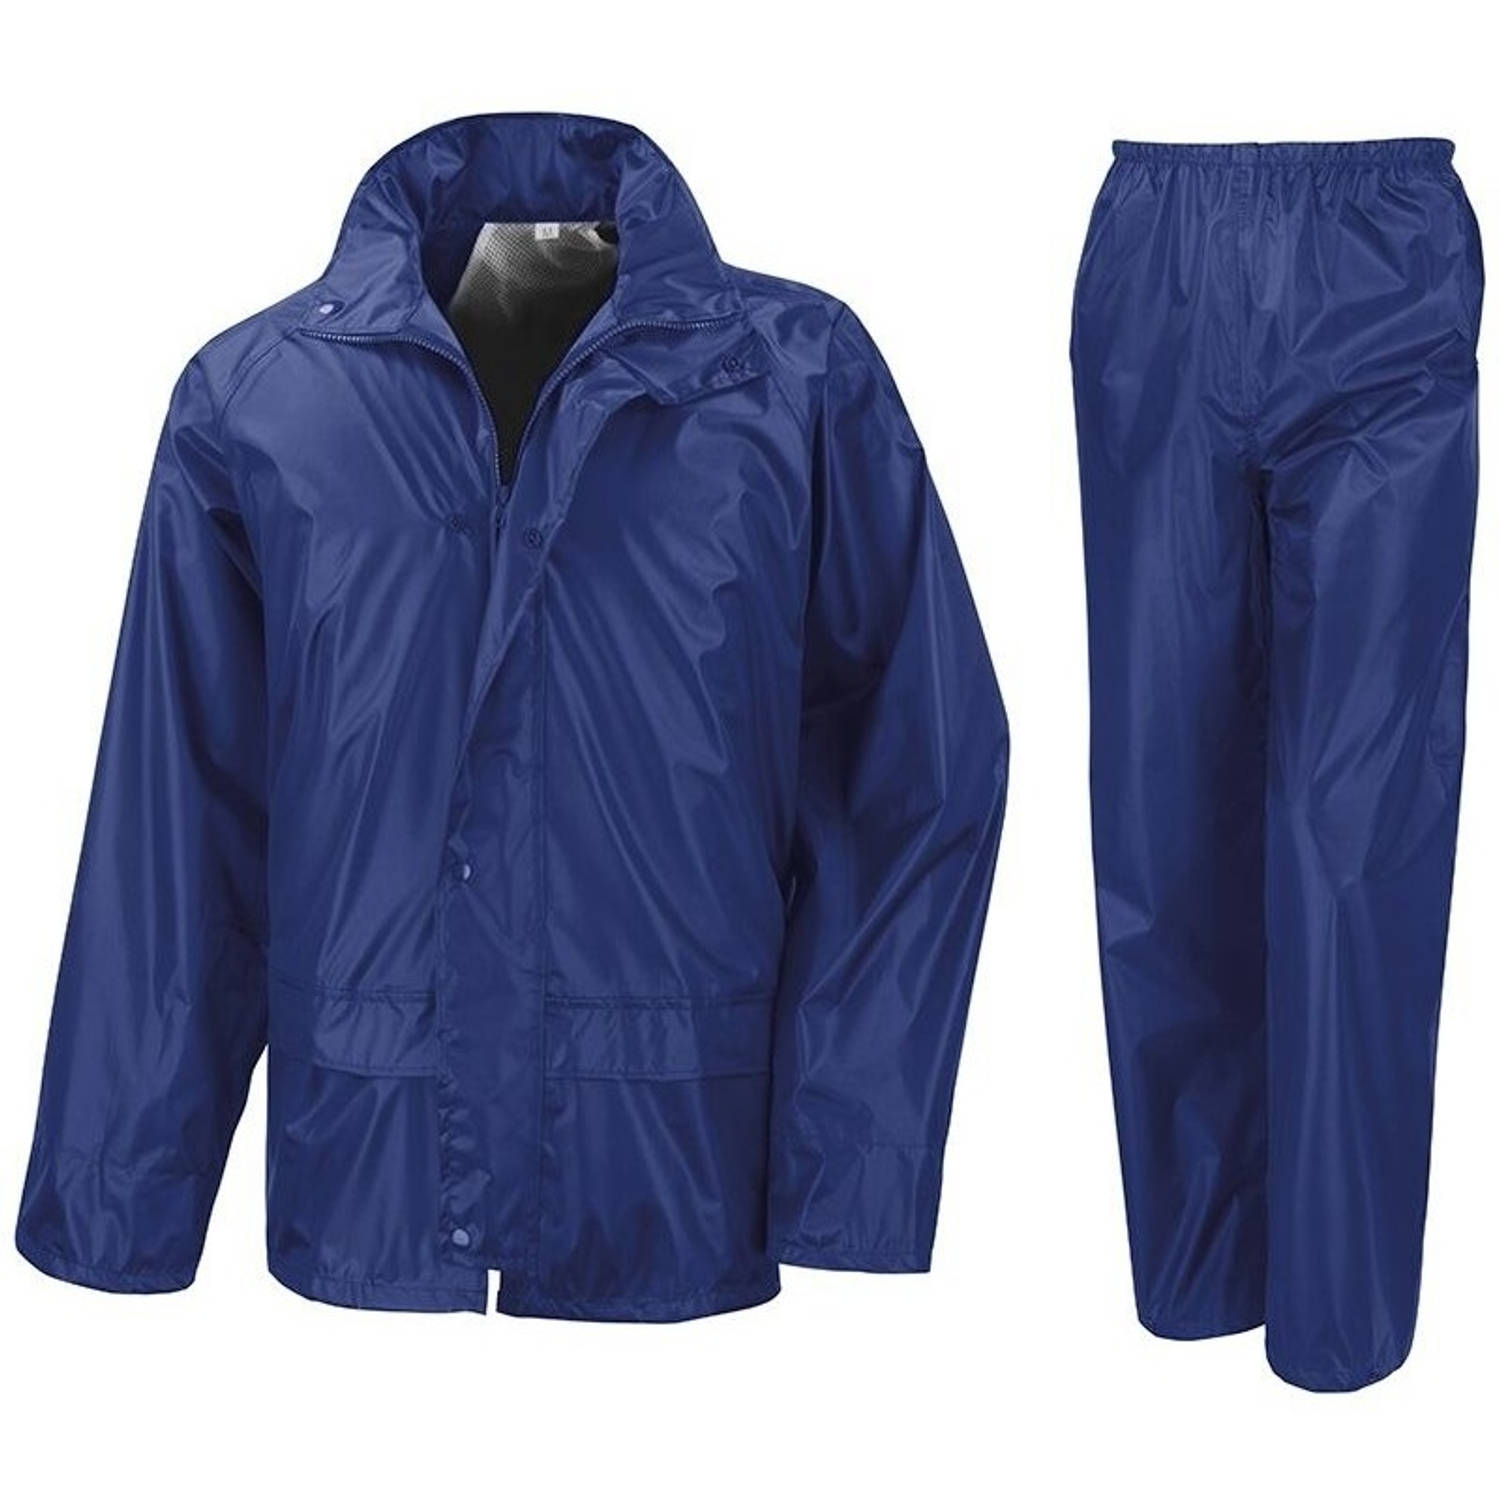 Regenpakken kobalt blauw voor meisjes XL (152-164) - Regenpakken